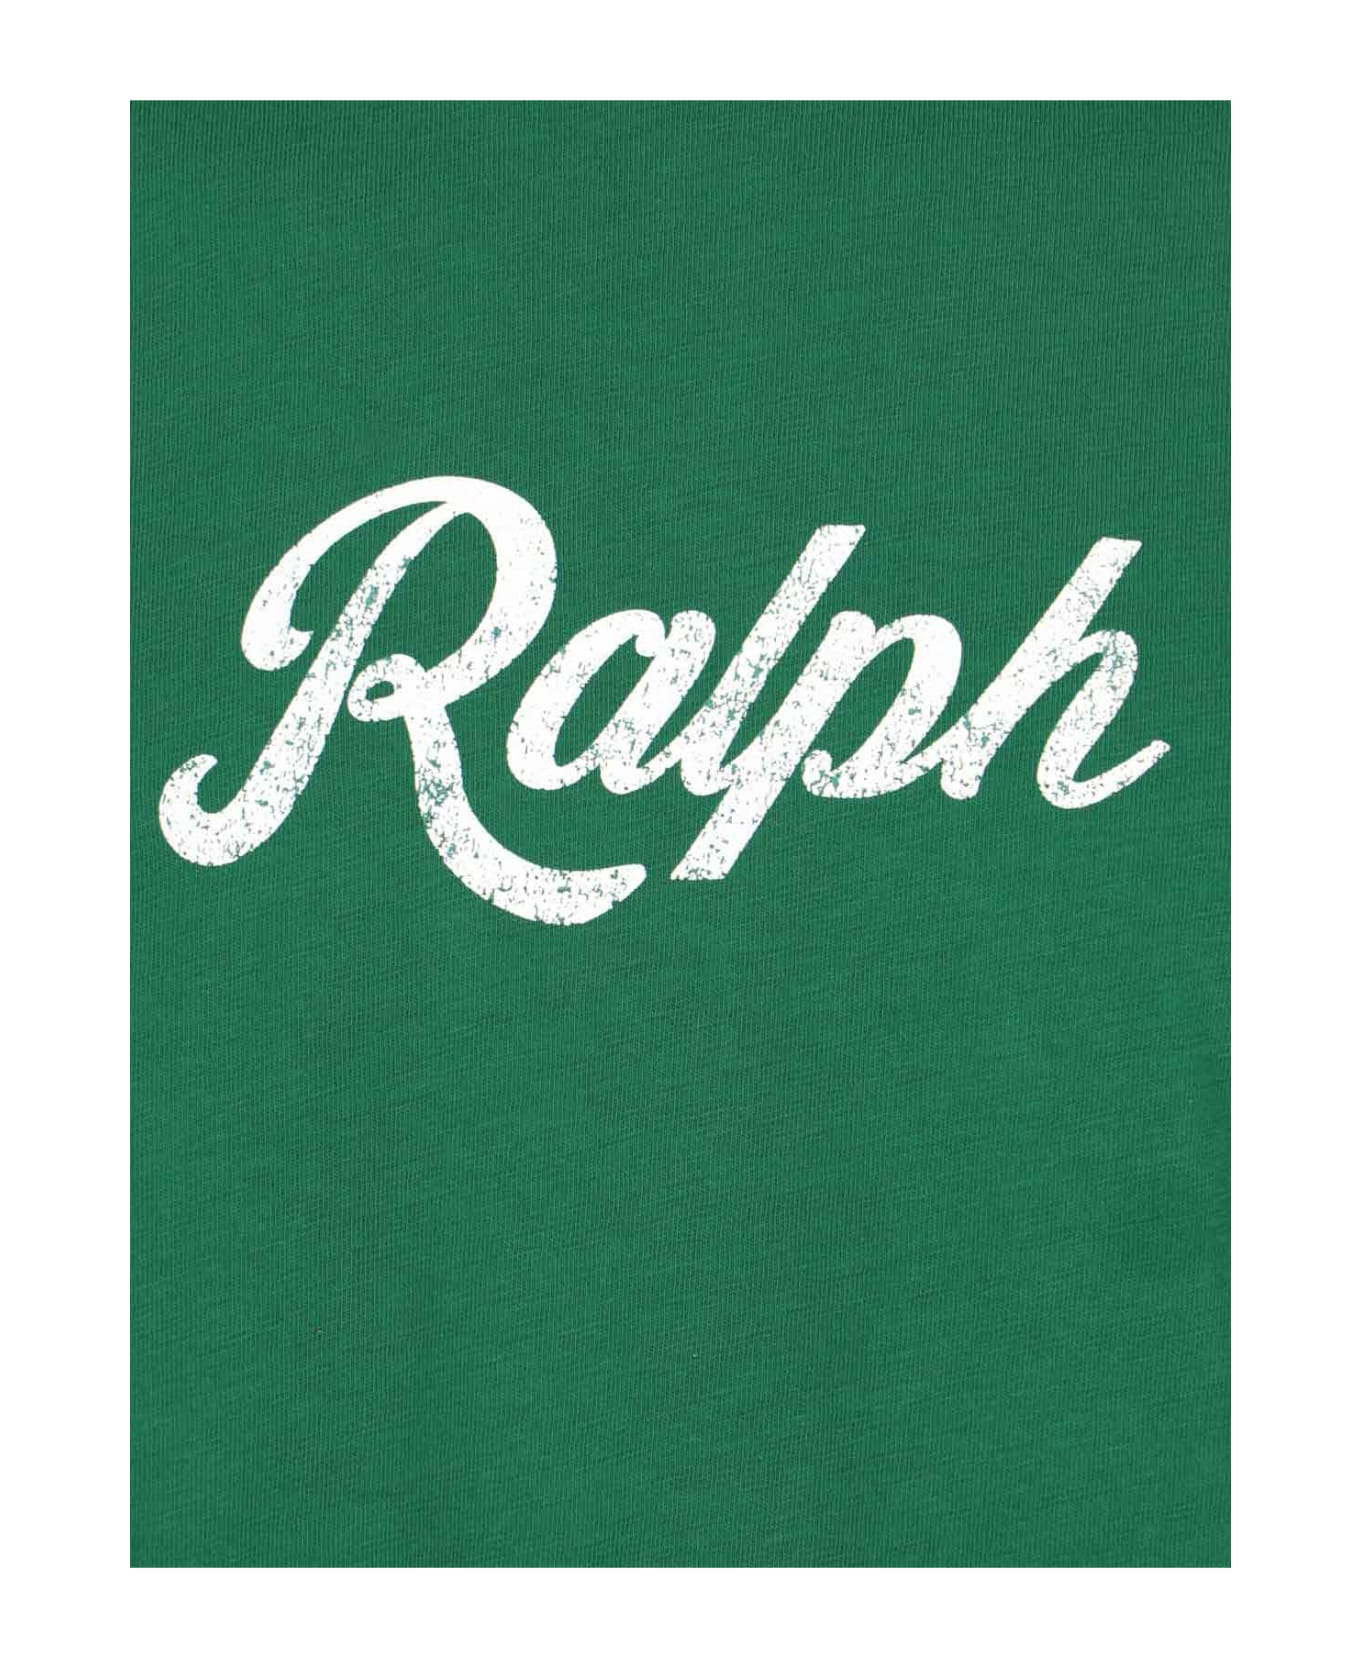 Polo Ralph Lauren Logo T-shirt - Green シャツ